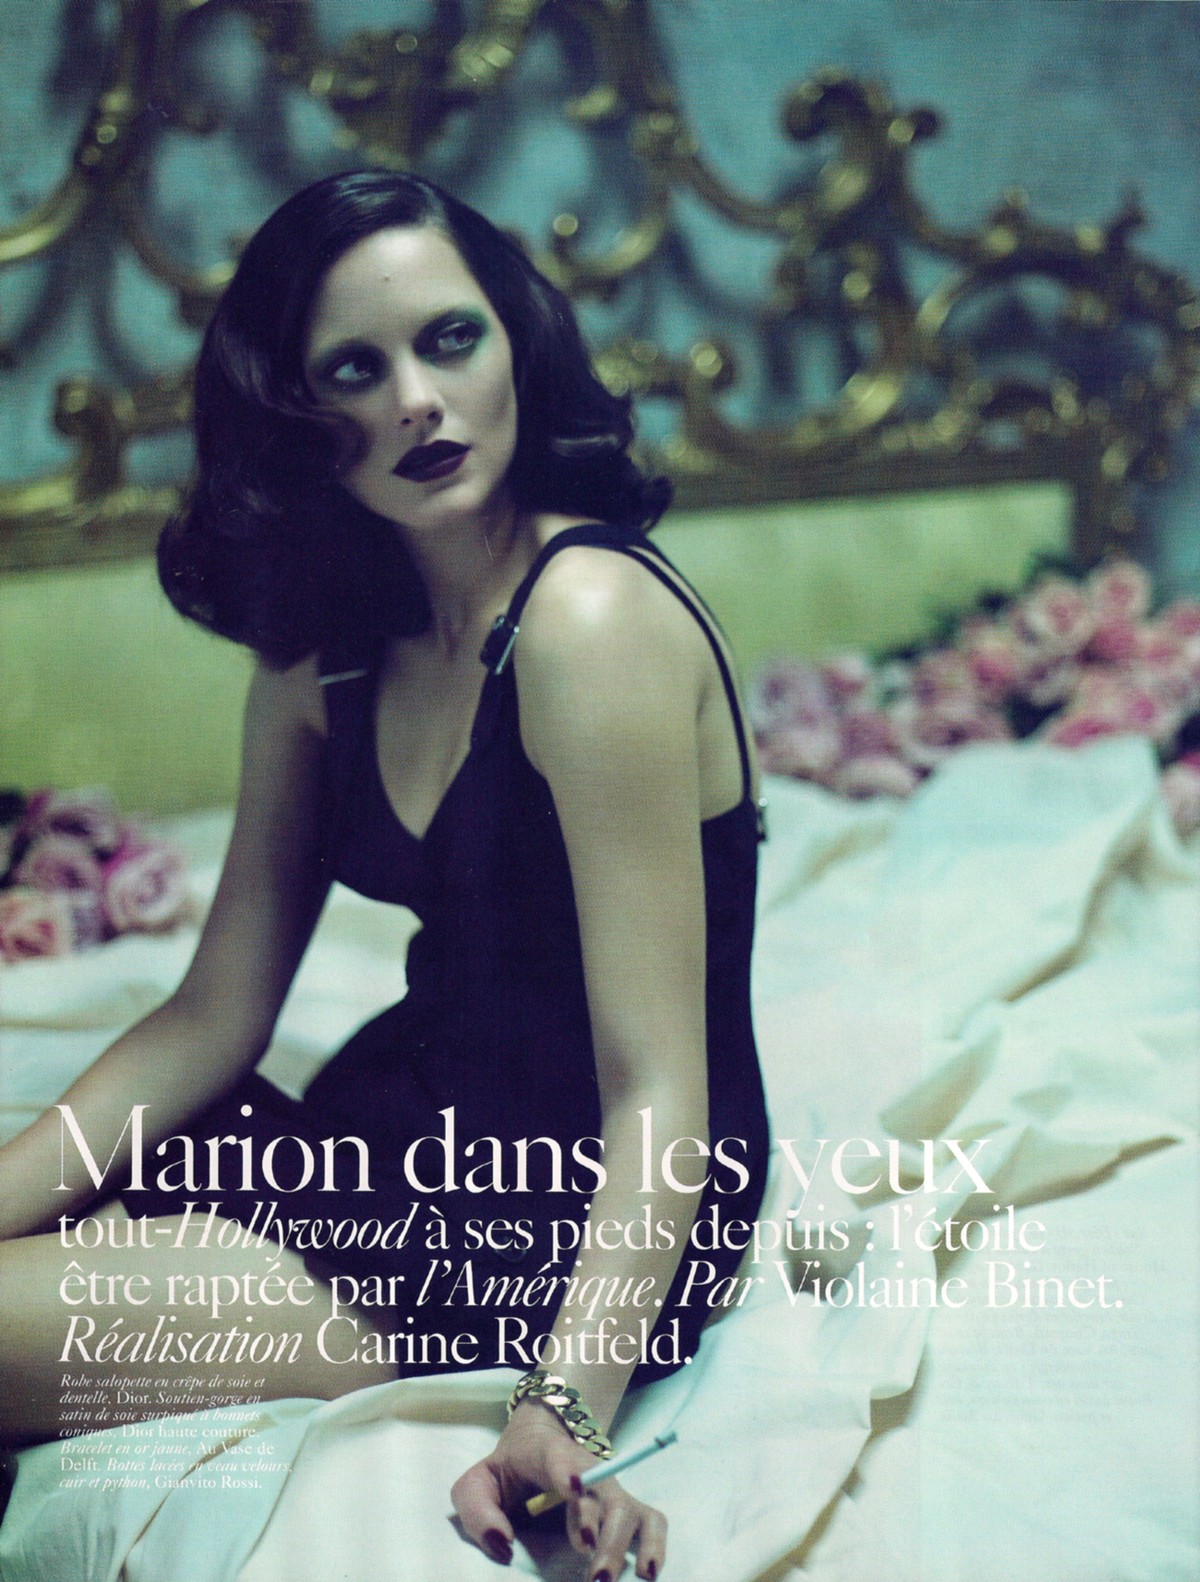 Марион Котийяр для Vogue Paris